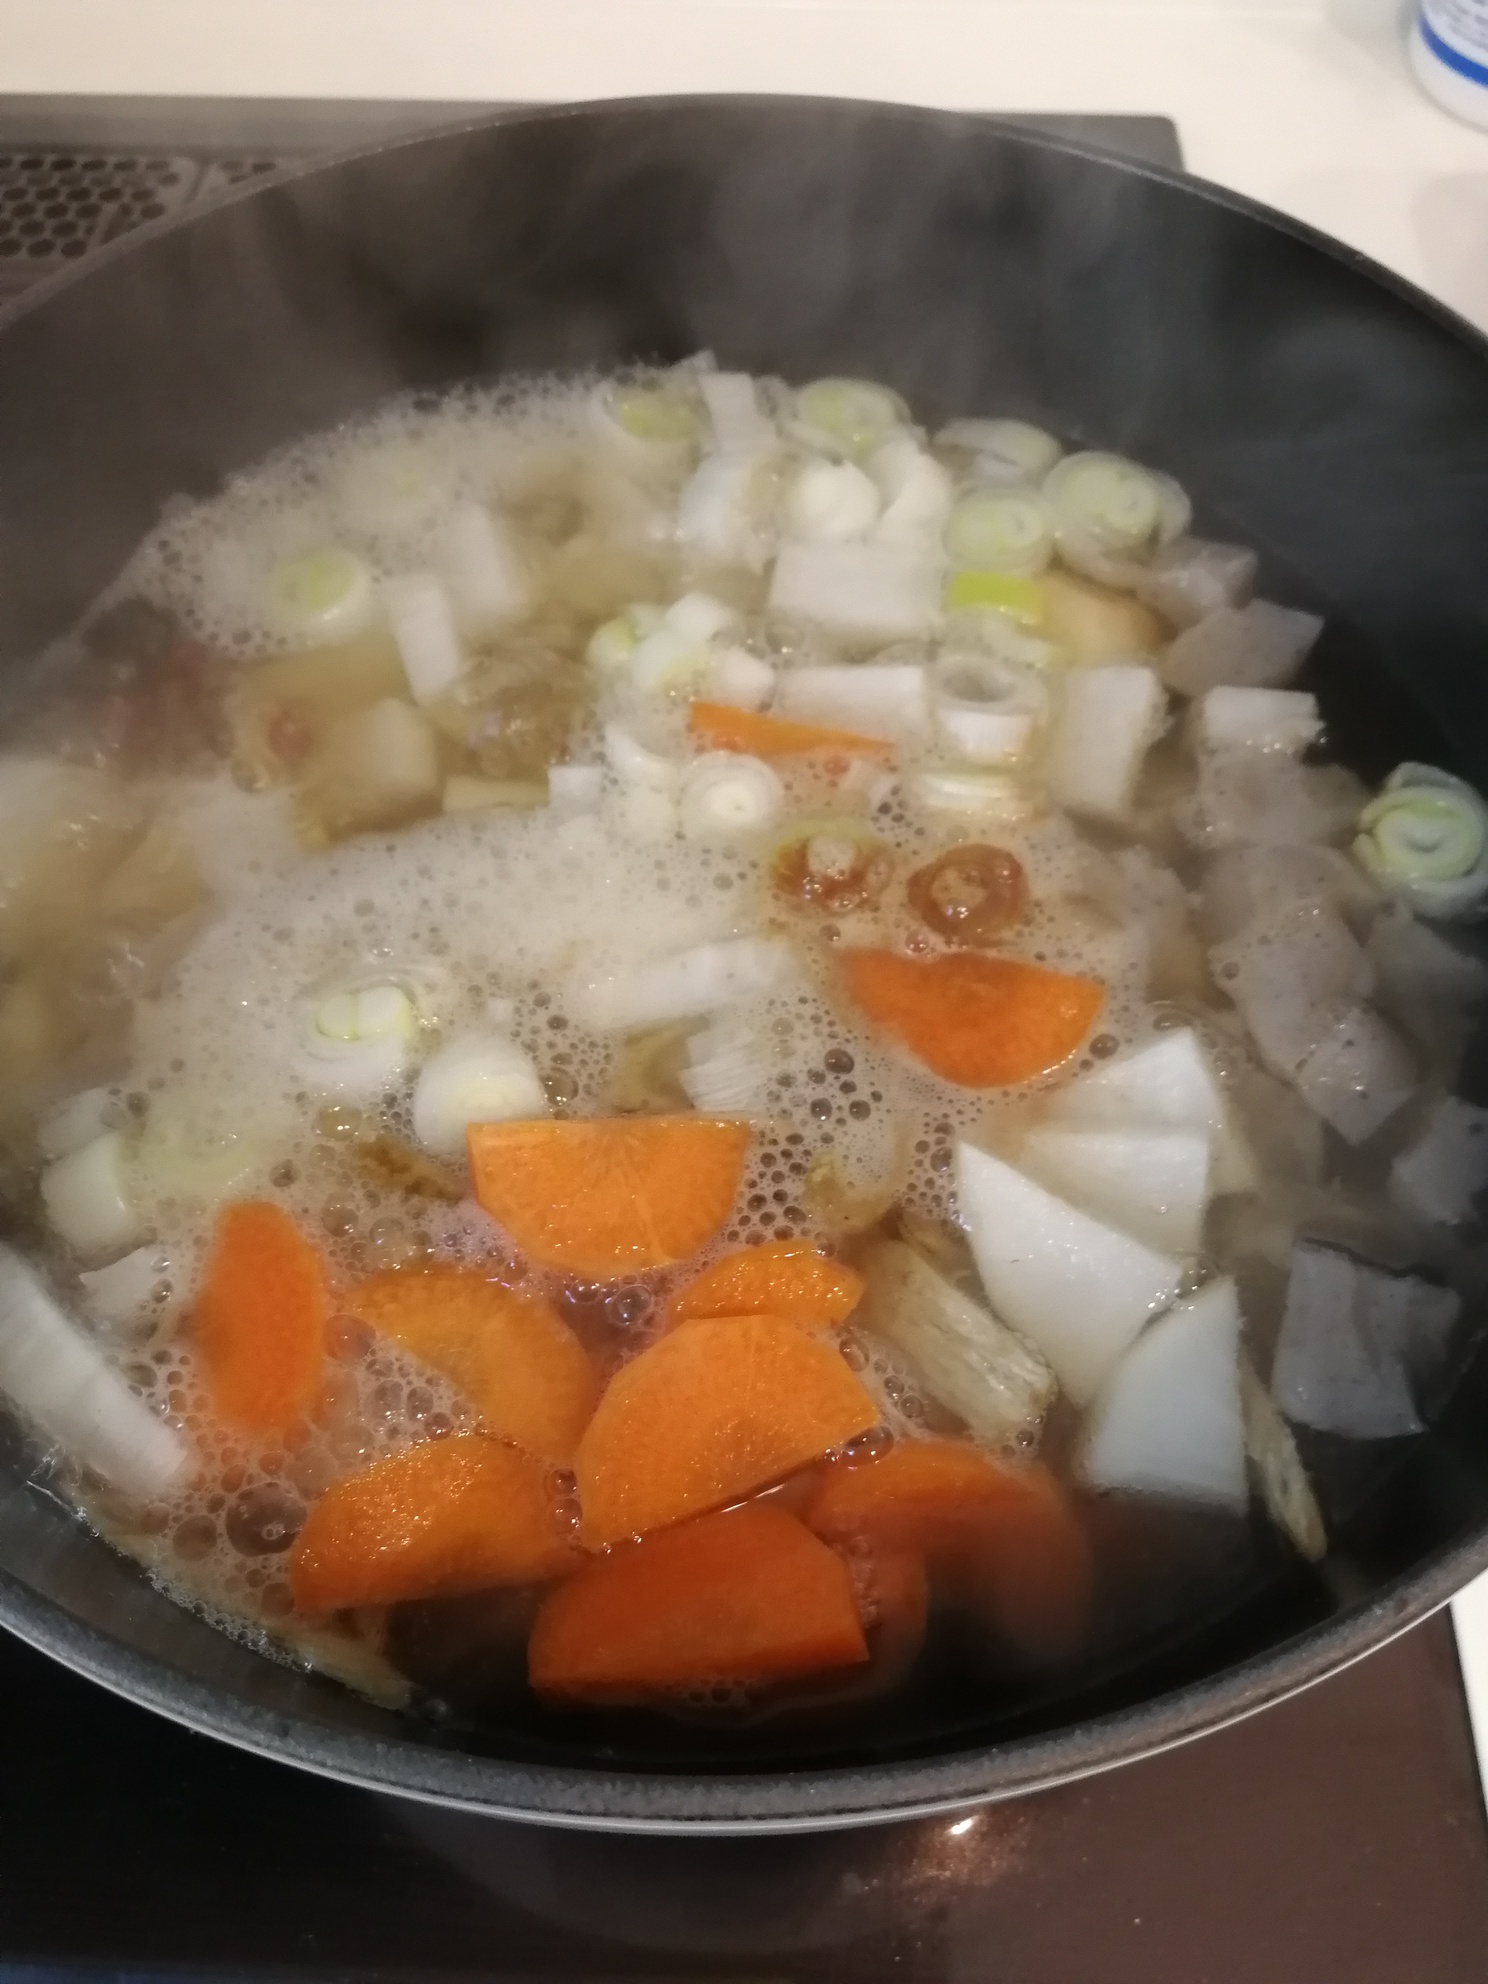 鍋に①～③をすべて入れ、だし汁を注ぎ入れて具材が軟らかくなるまで25～30分煮る。
火を止めて味噌を溶かしいれる。